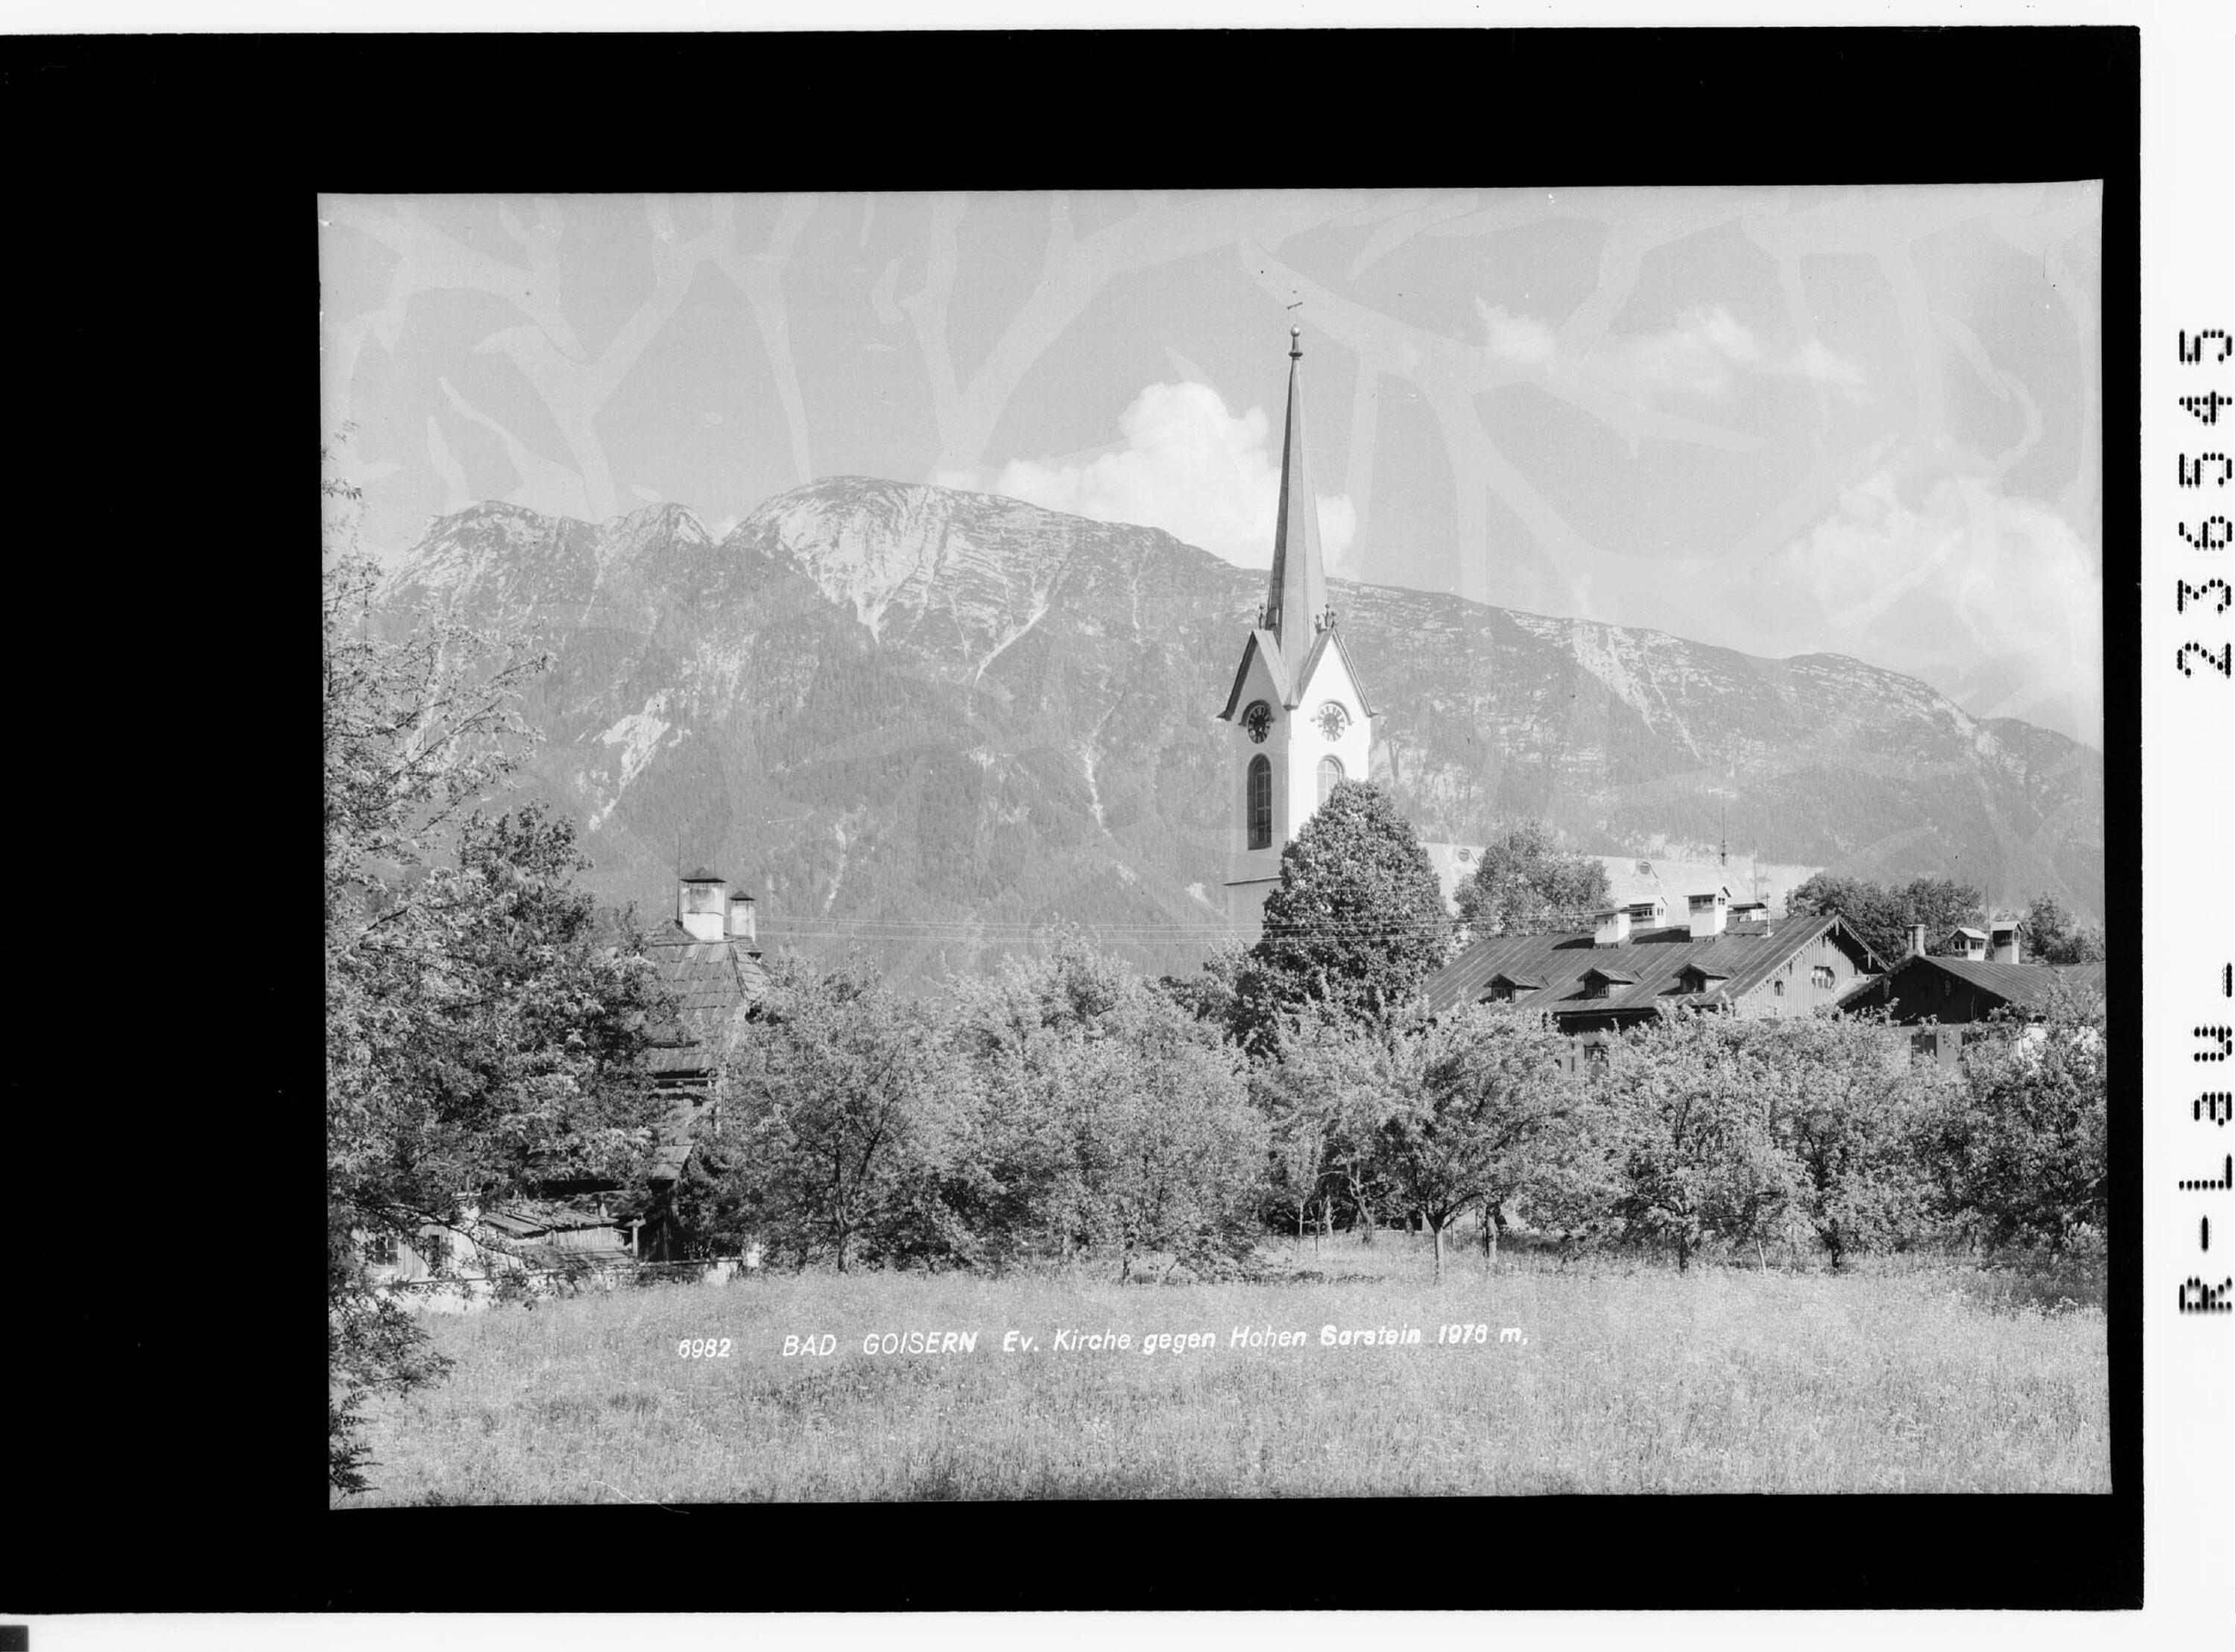 Bad Goisern / Evangelische Kirche gegen Hohen Sarstein 1976 m></div>


    <hr>
    <div class=